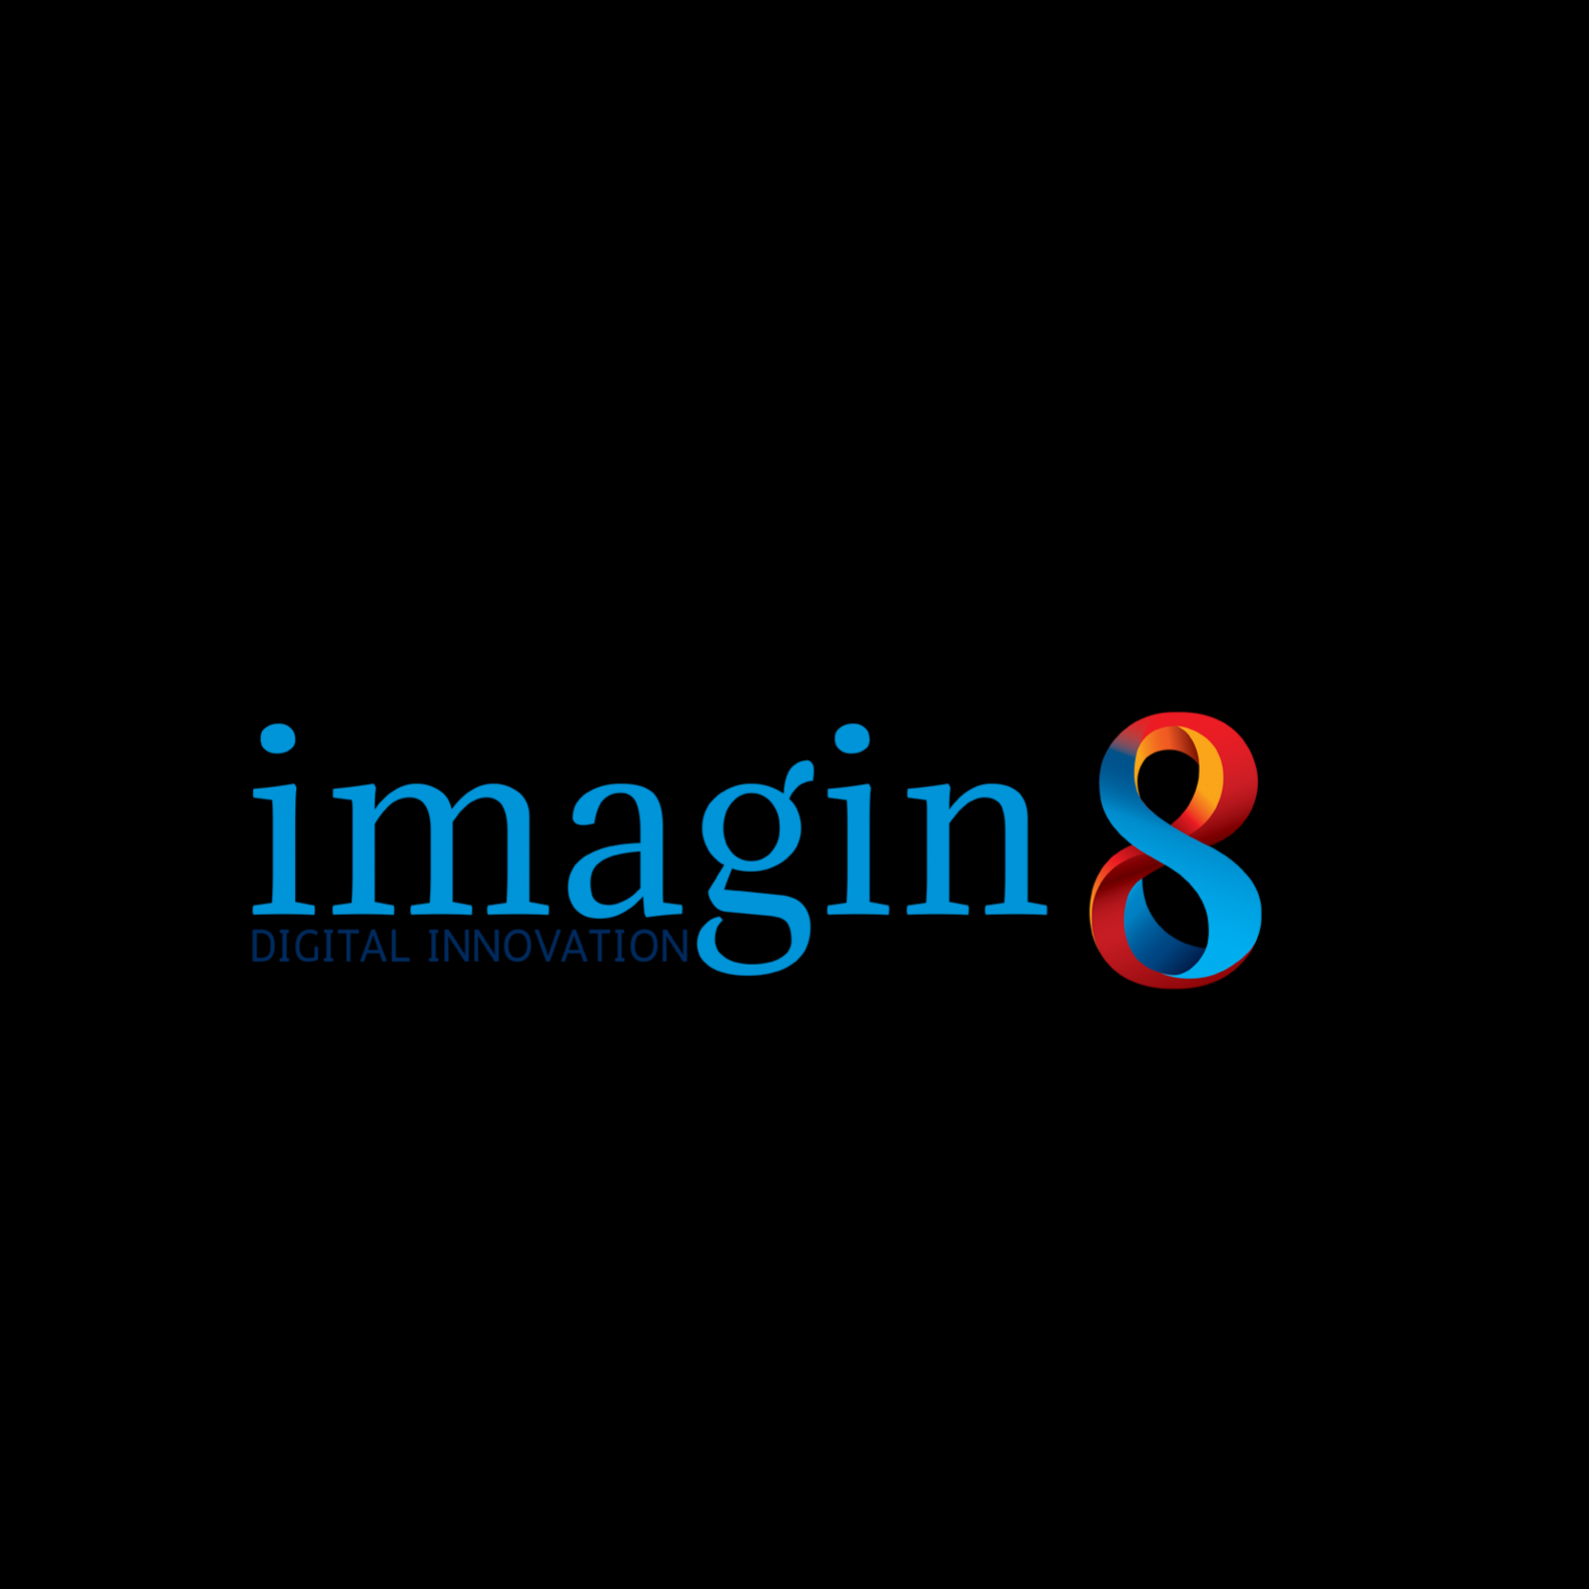 Imagin8